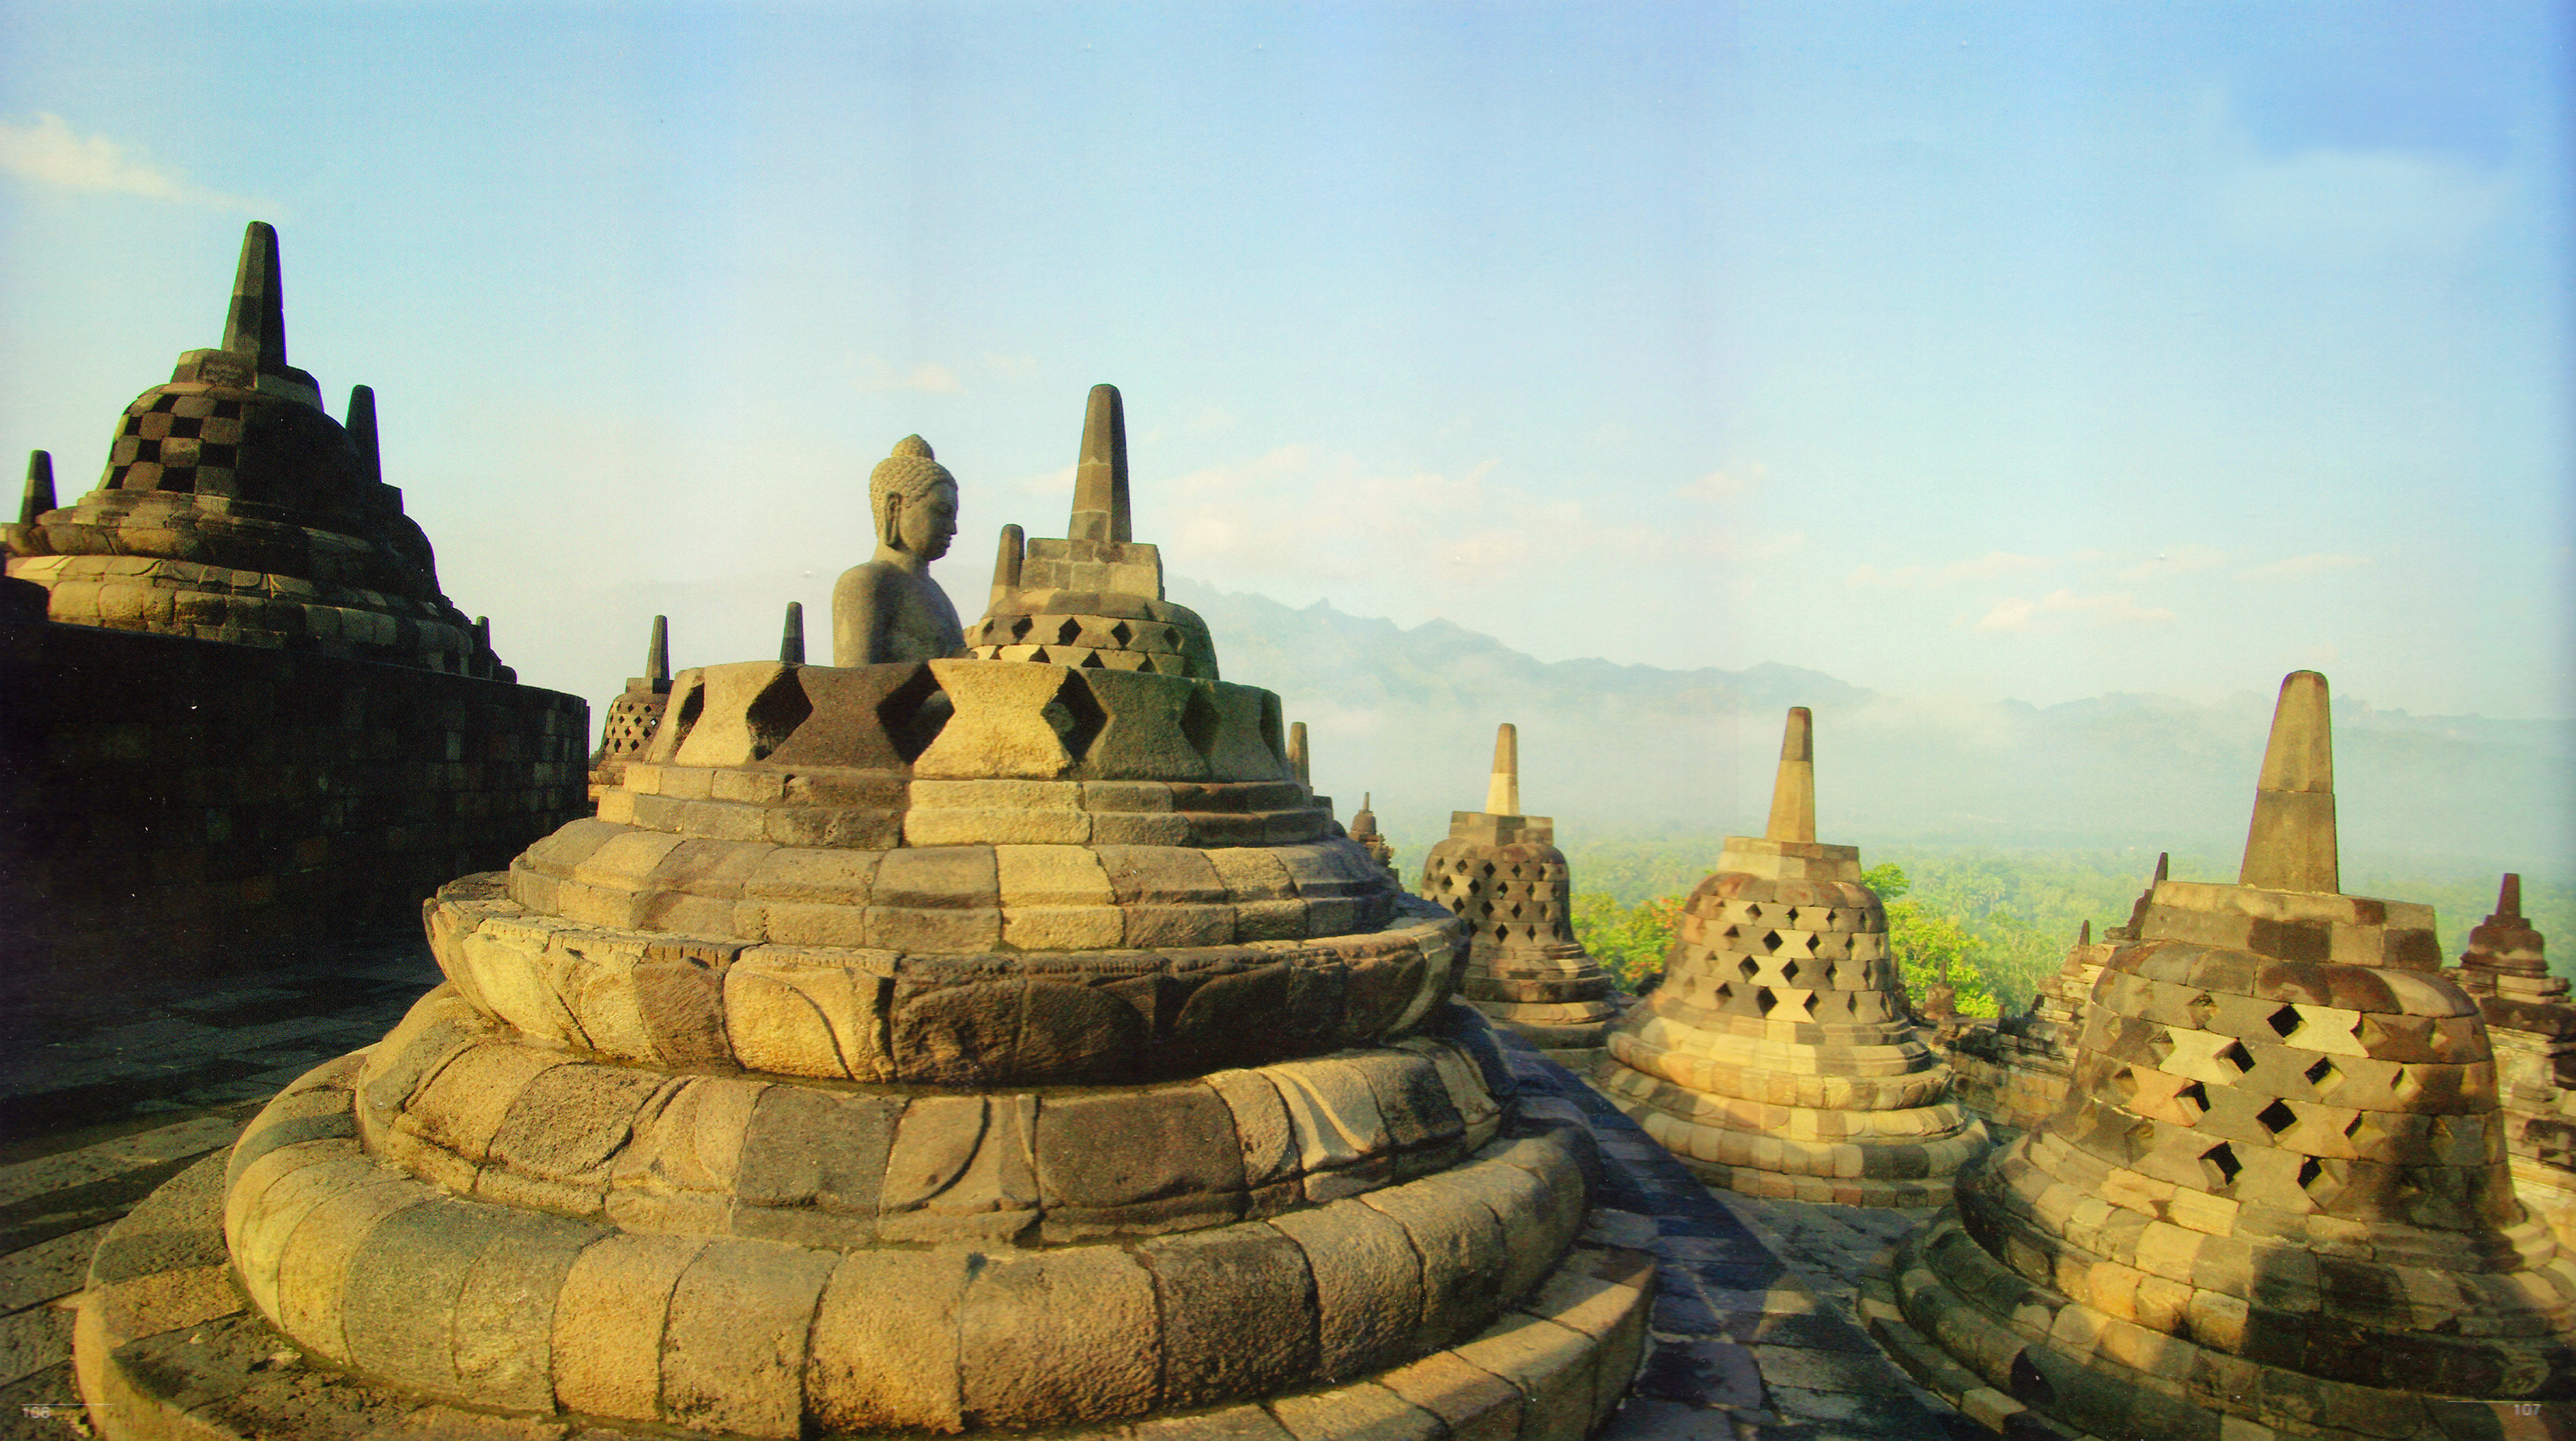 Gaji Pt Taman Wisata Candi Borobudur